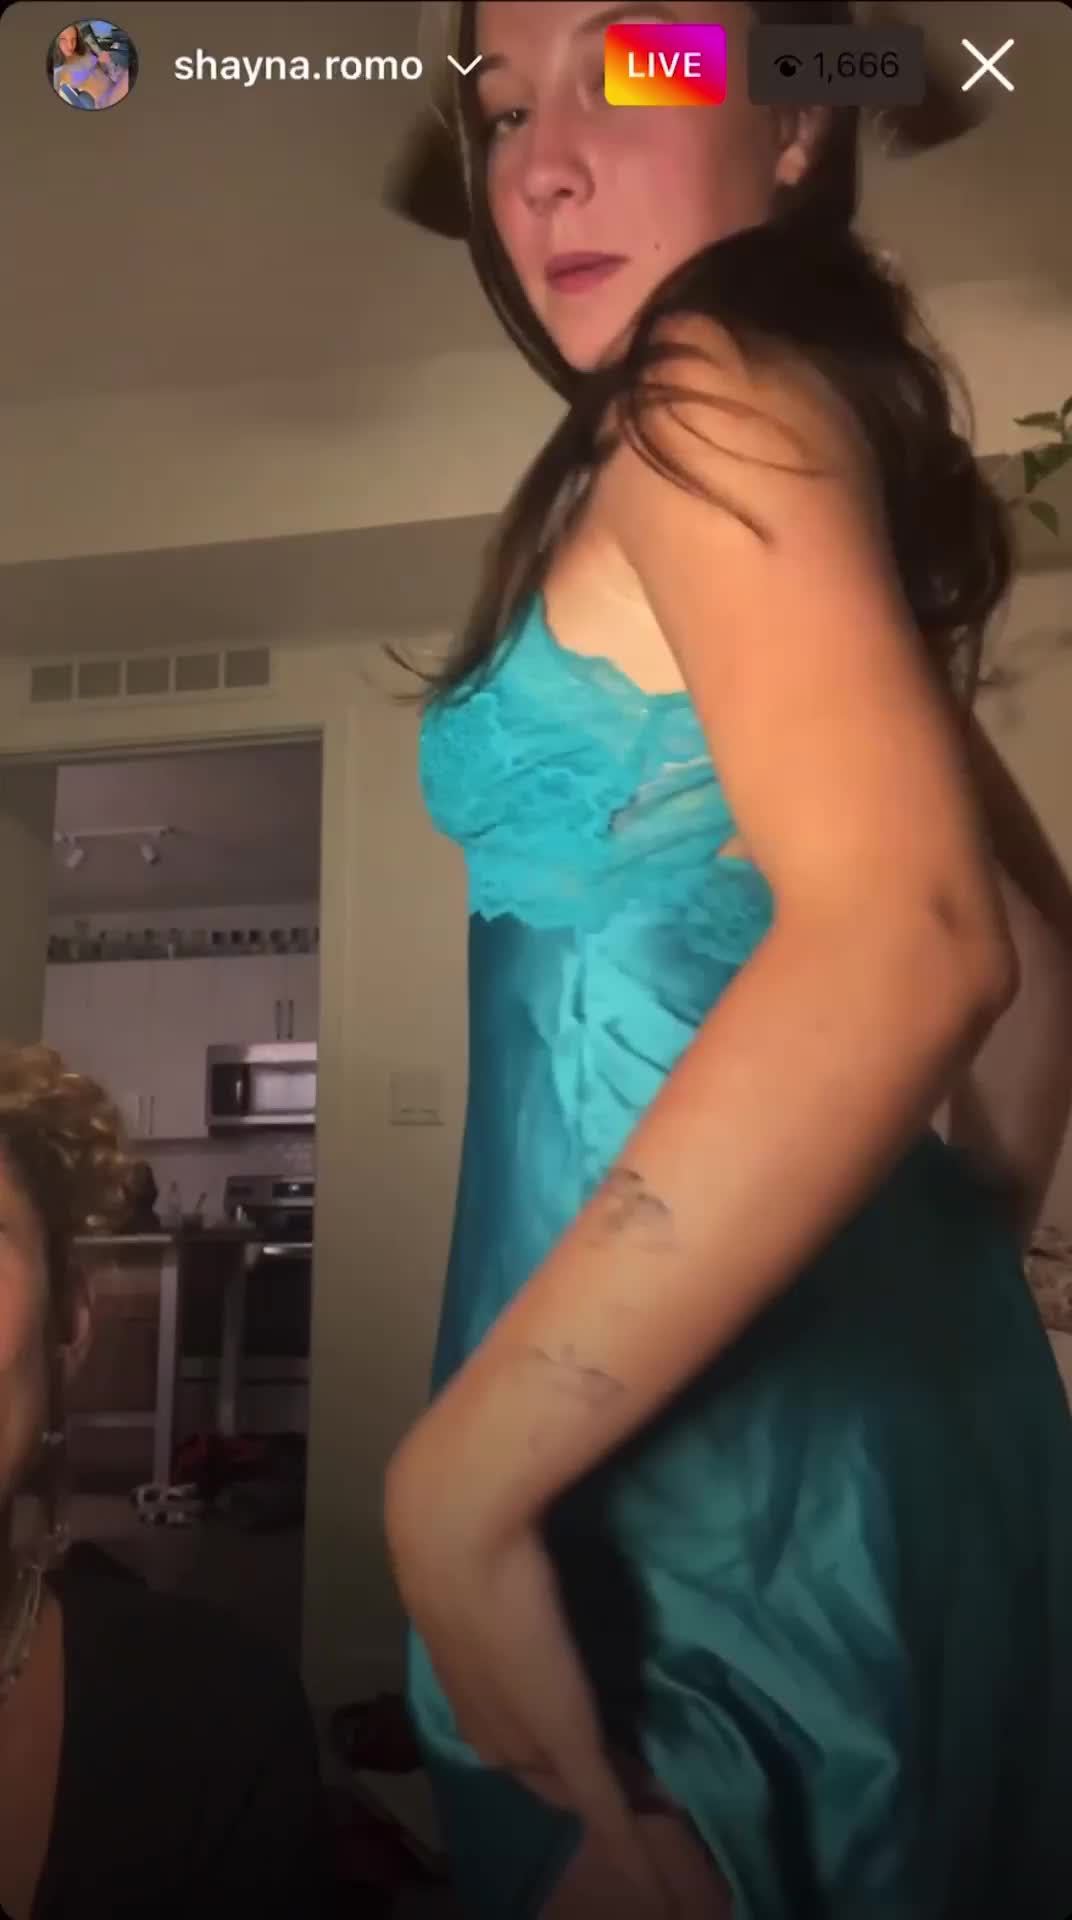 Une fille en nuisette montre ses beaux seins lors d'un live Instagram